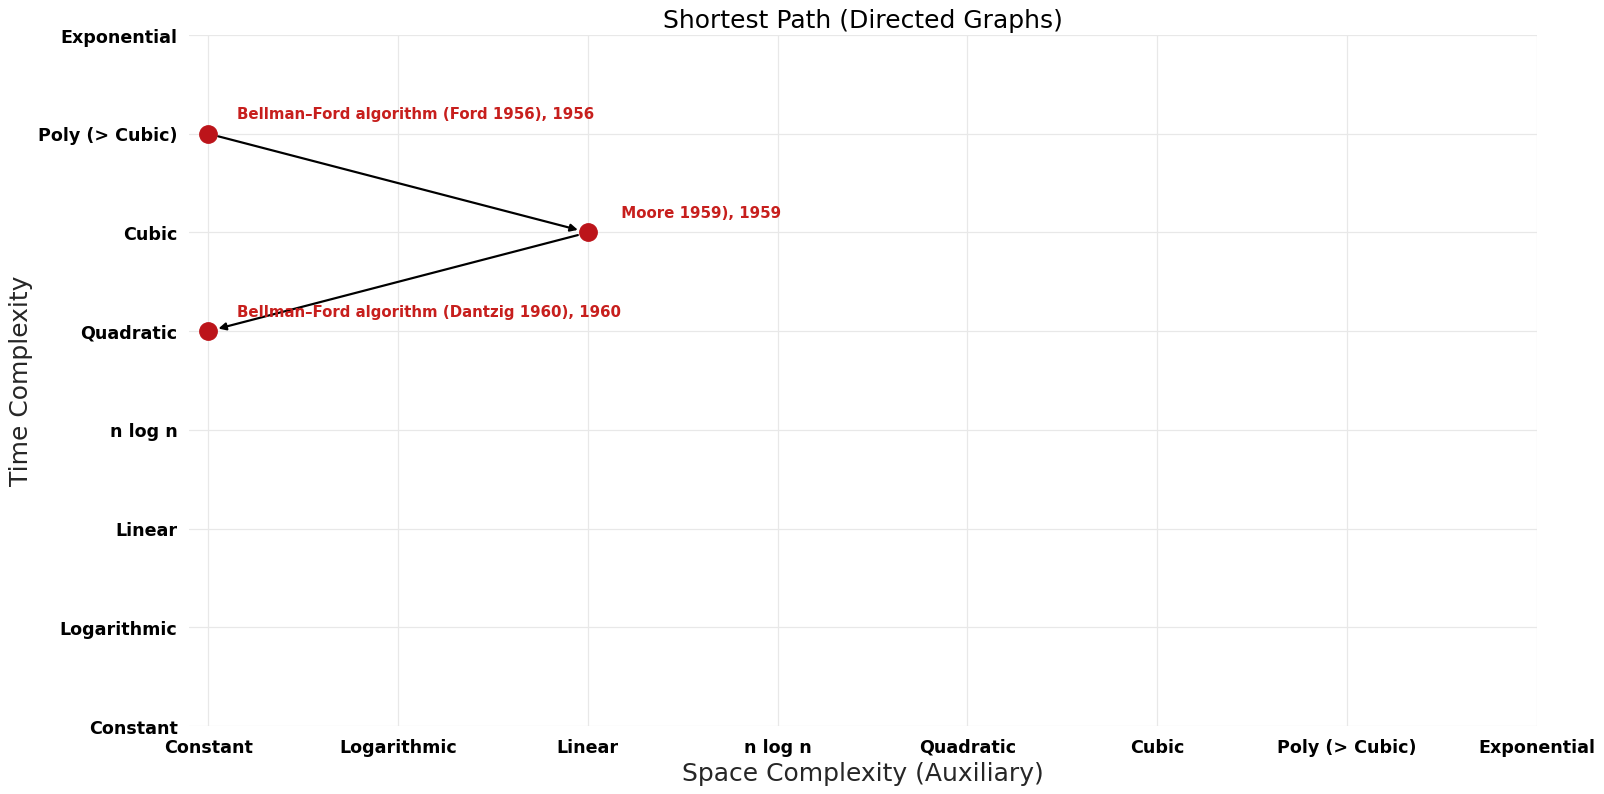 File:Shortest Path (Directed Graphs) - Pareto Frontier.png